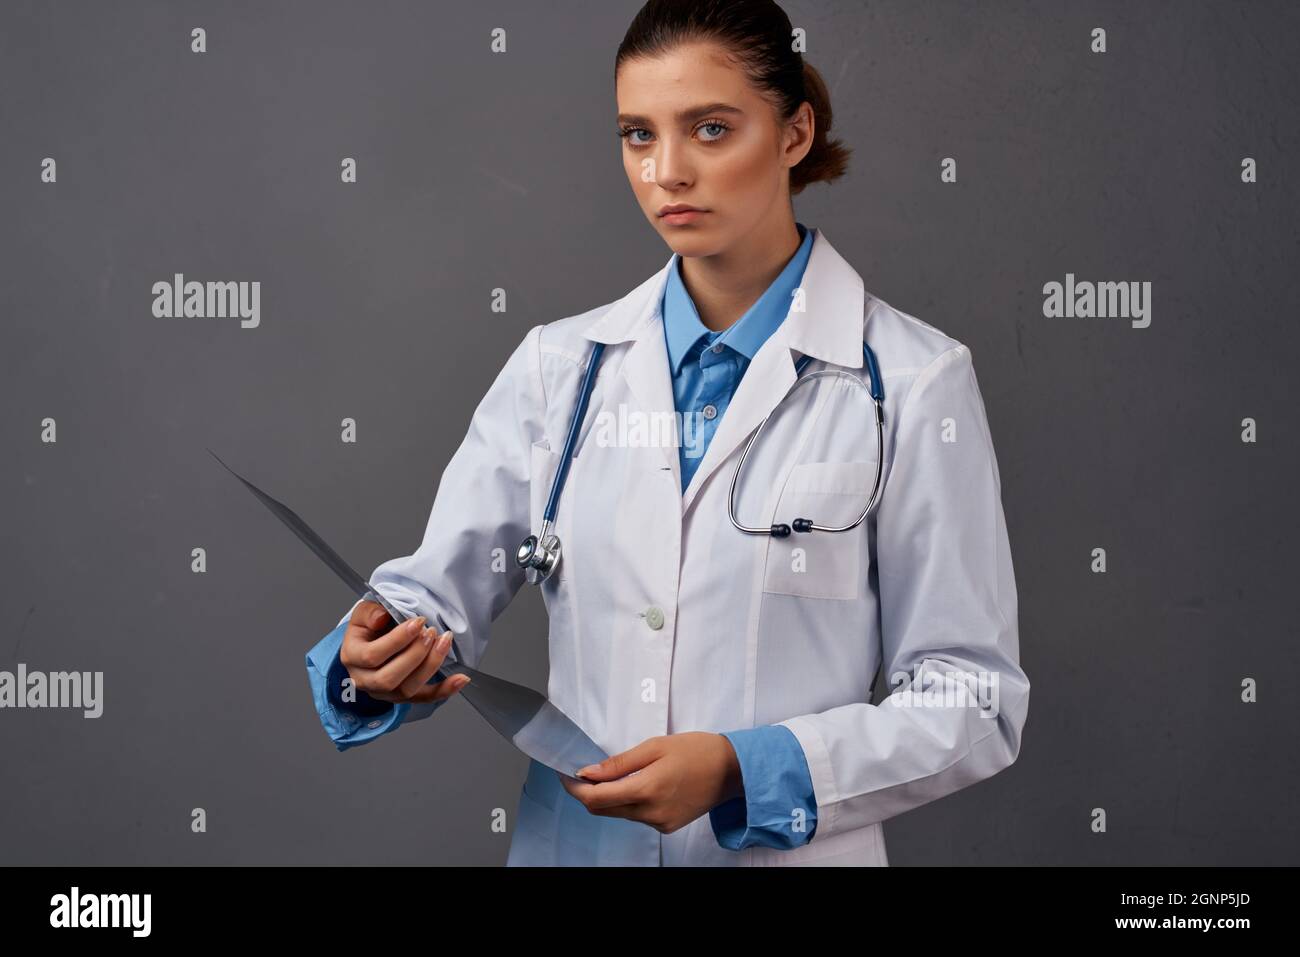 mujer doctor radiólogo diagnóstico de la investigación de rayos x Fotografía de stock Alamy